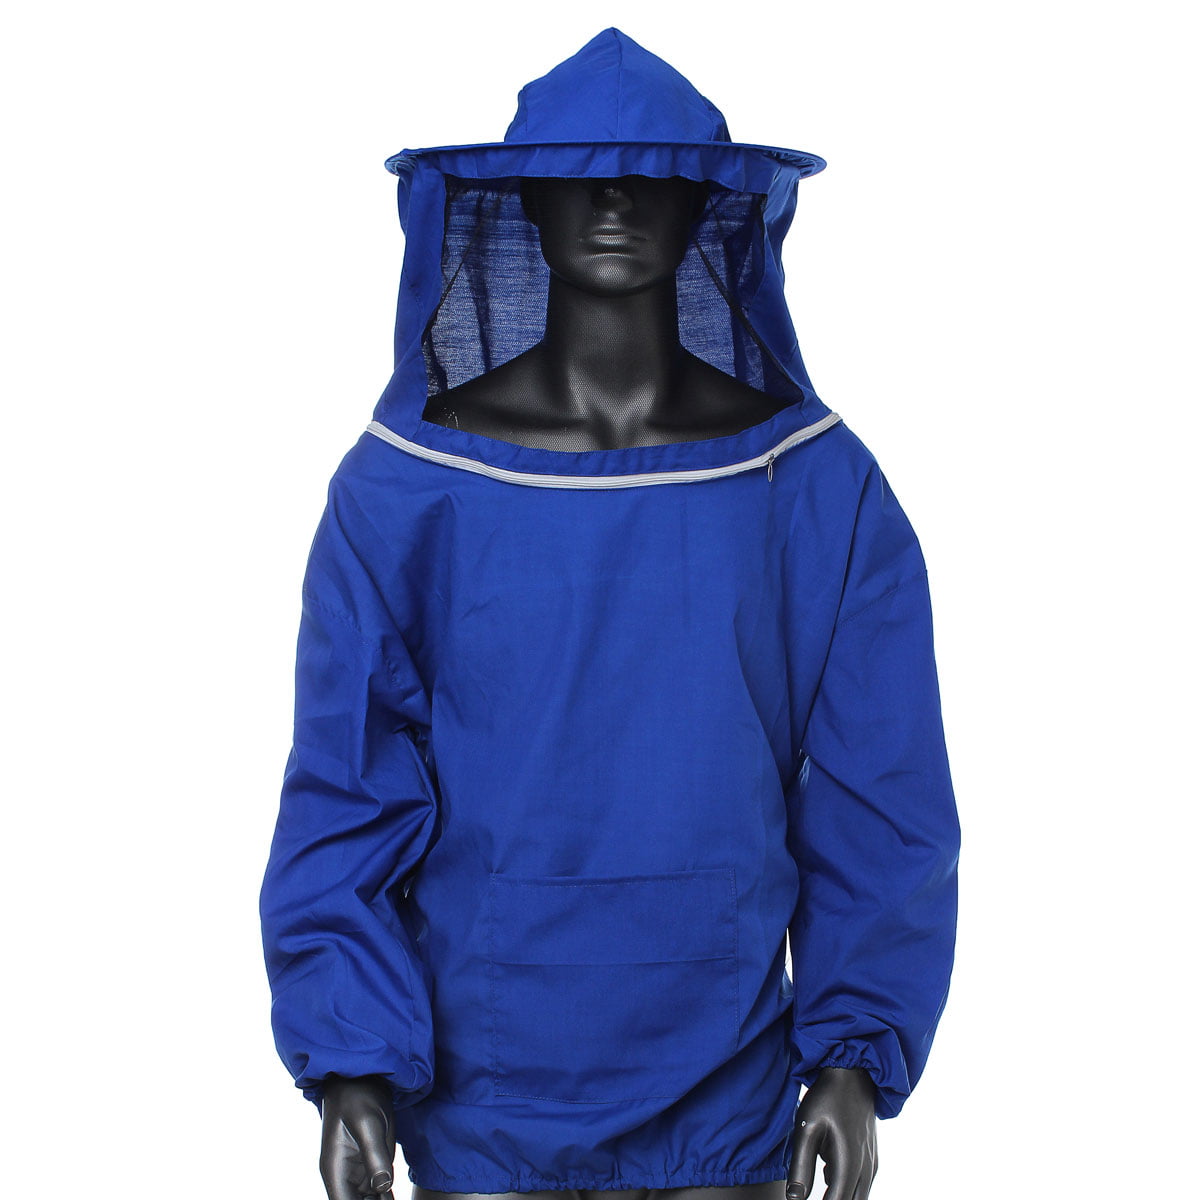 Beekeeper Beekeeping Jacket Protective Veil Smock Hat Suit Clothes Equipment 